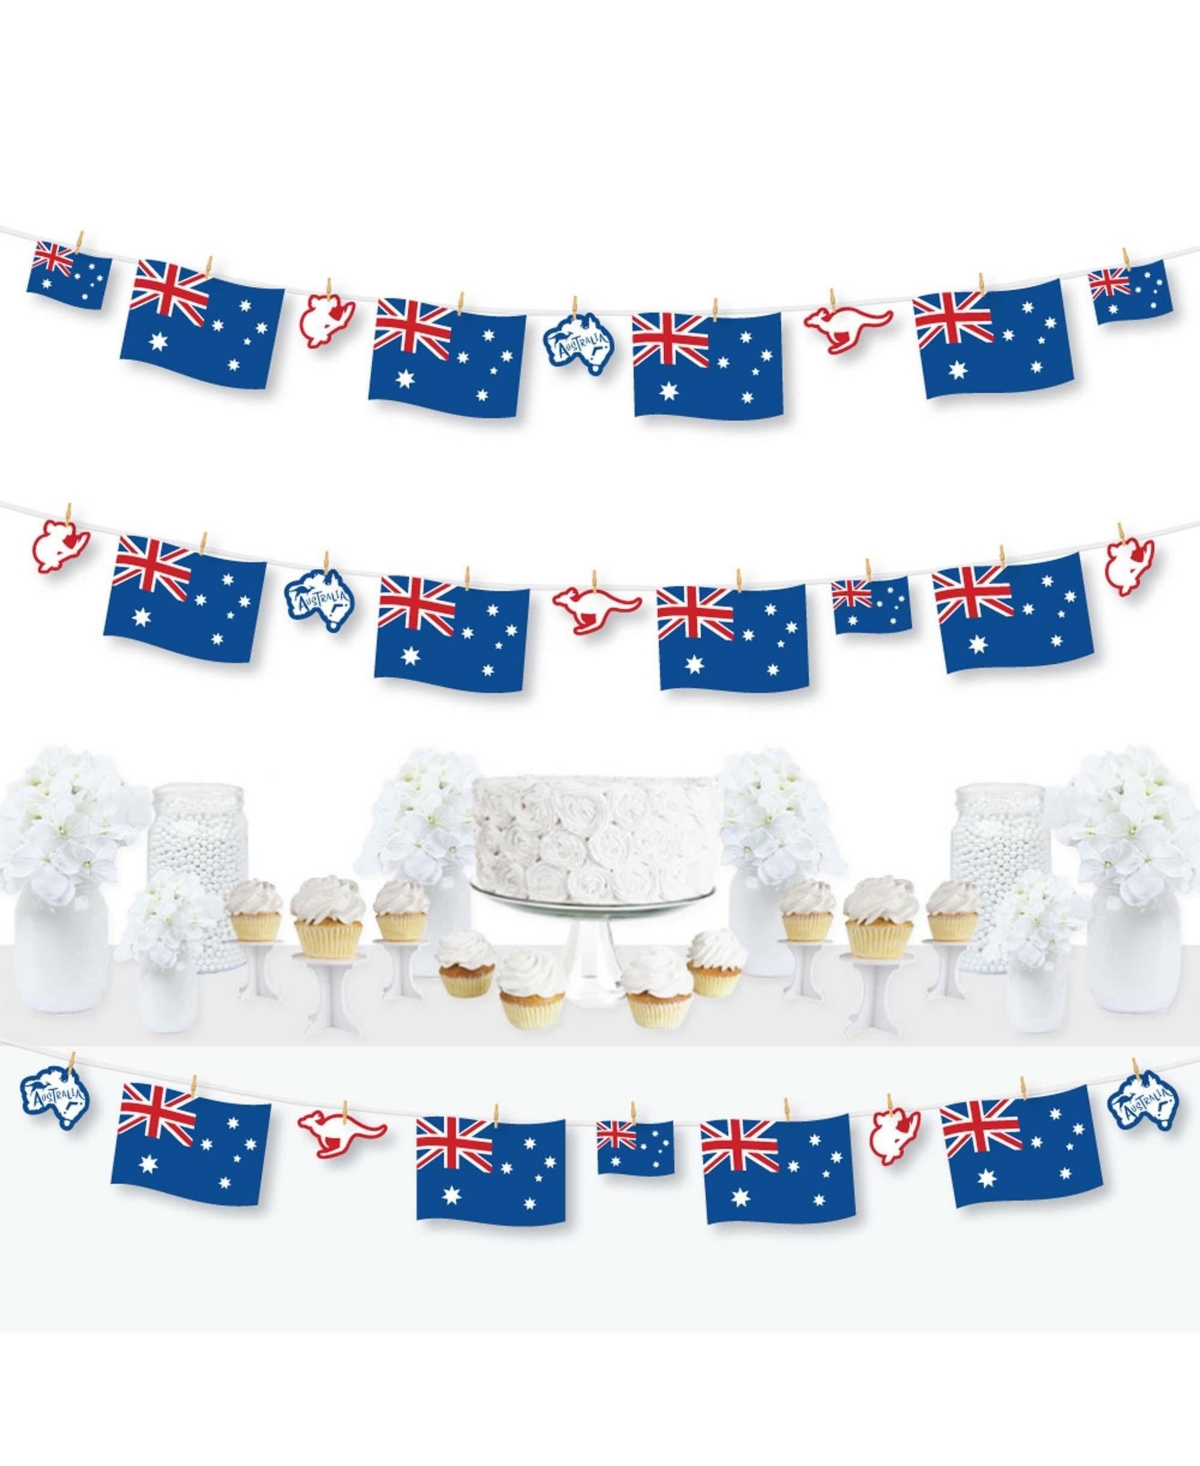 Australia Day - GDay Mate Aussie Diy Decor - Clothespin Garland Banner - 44 Pc